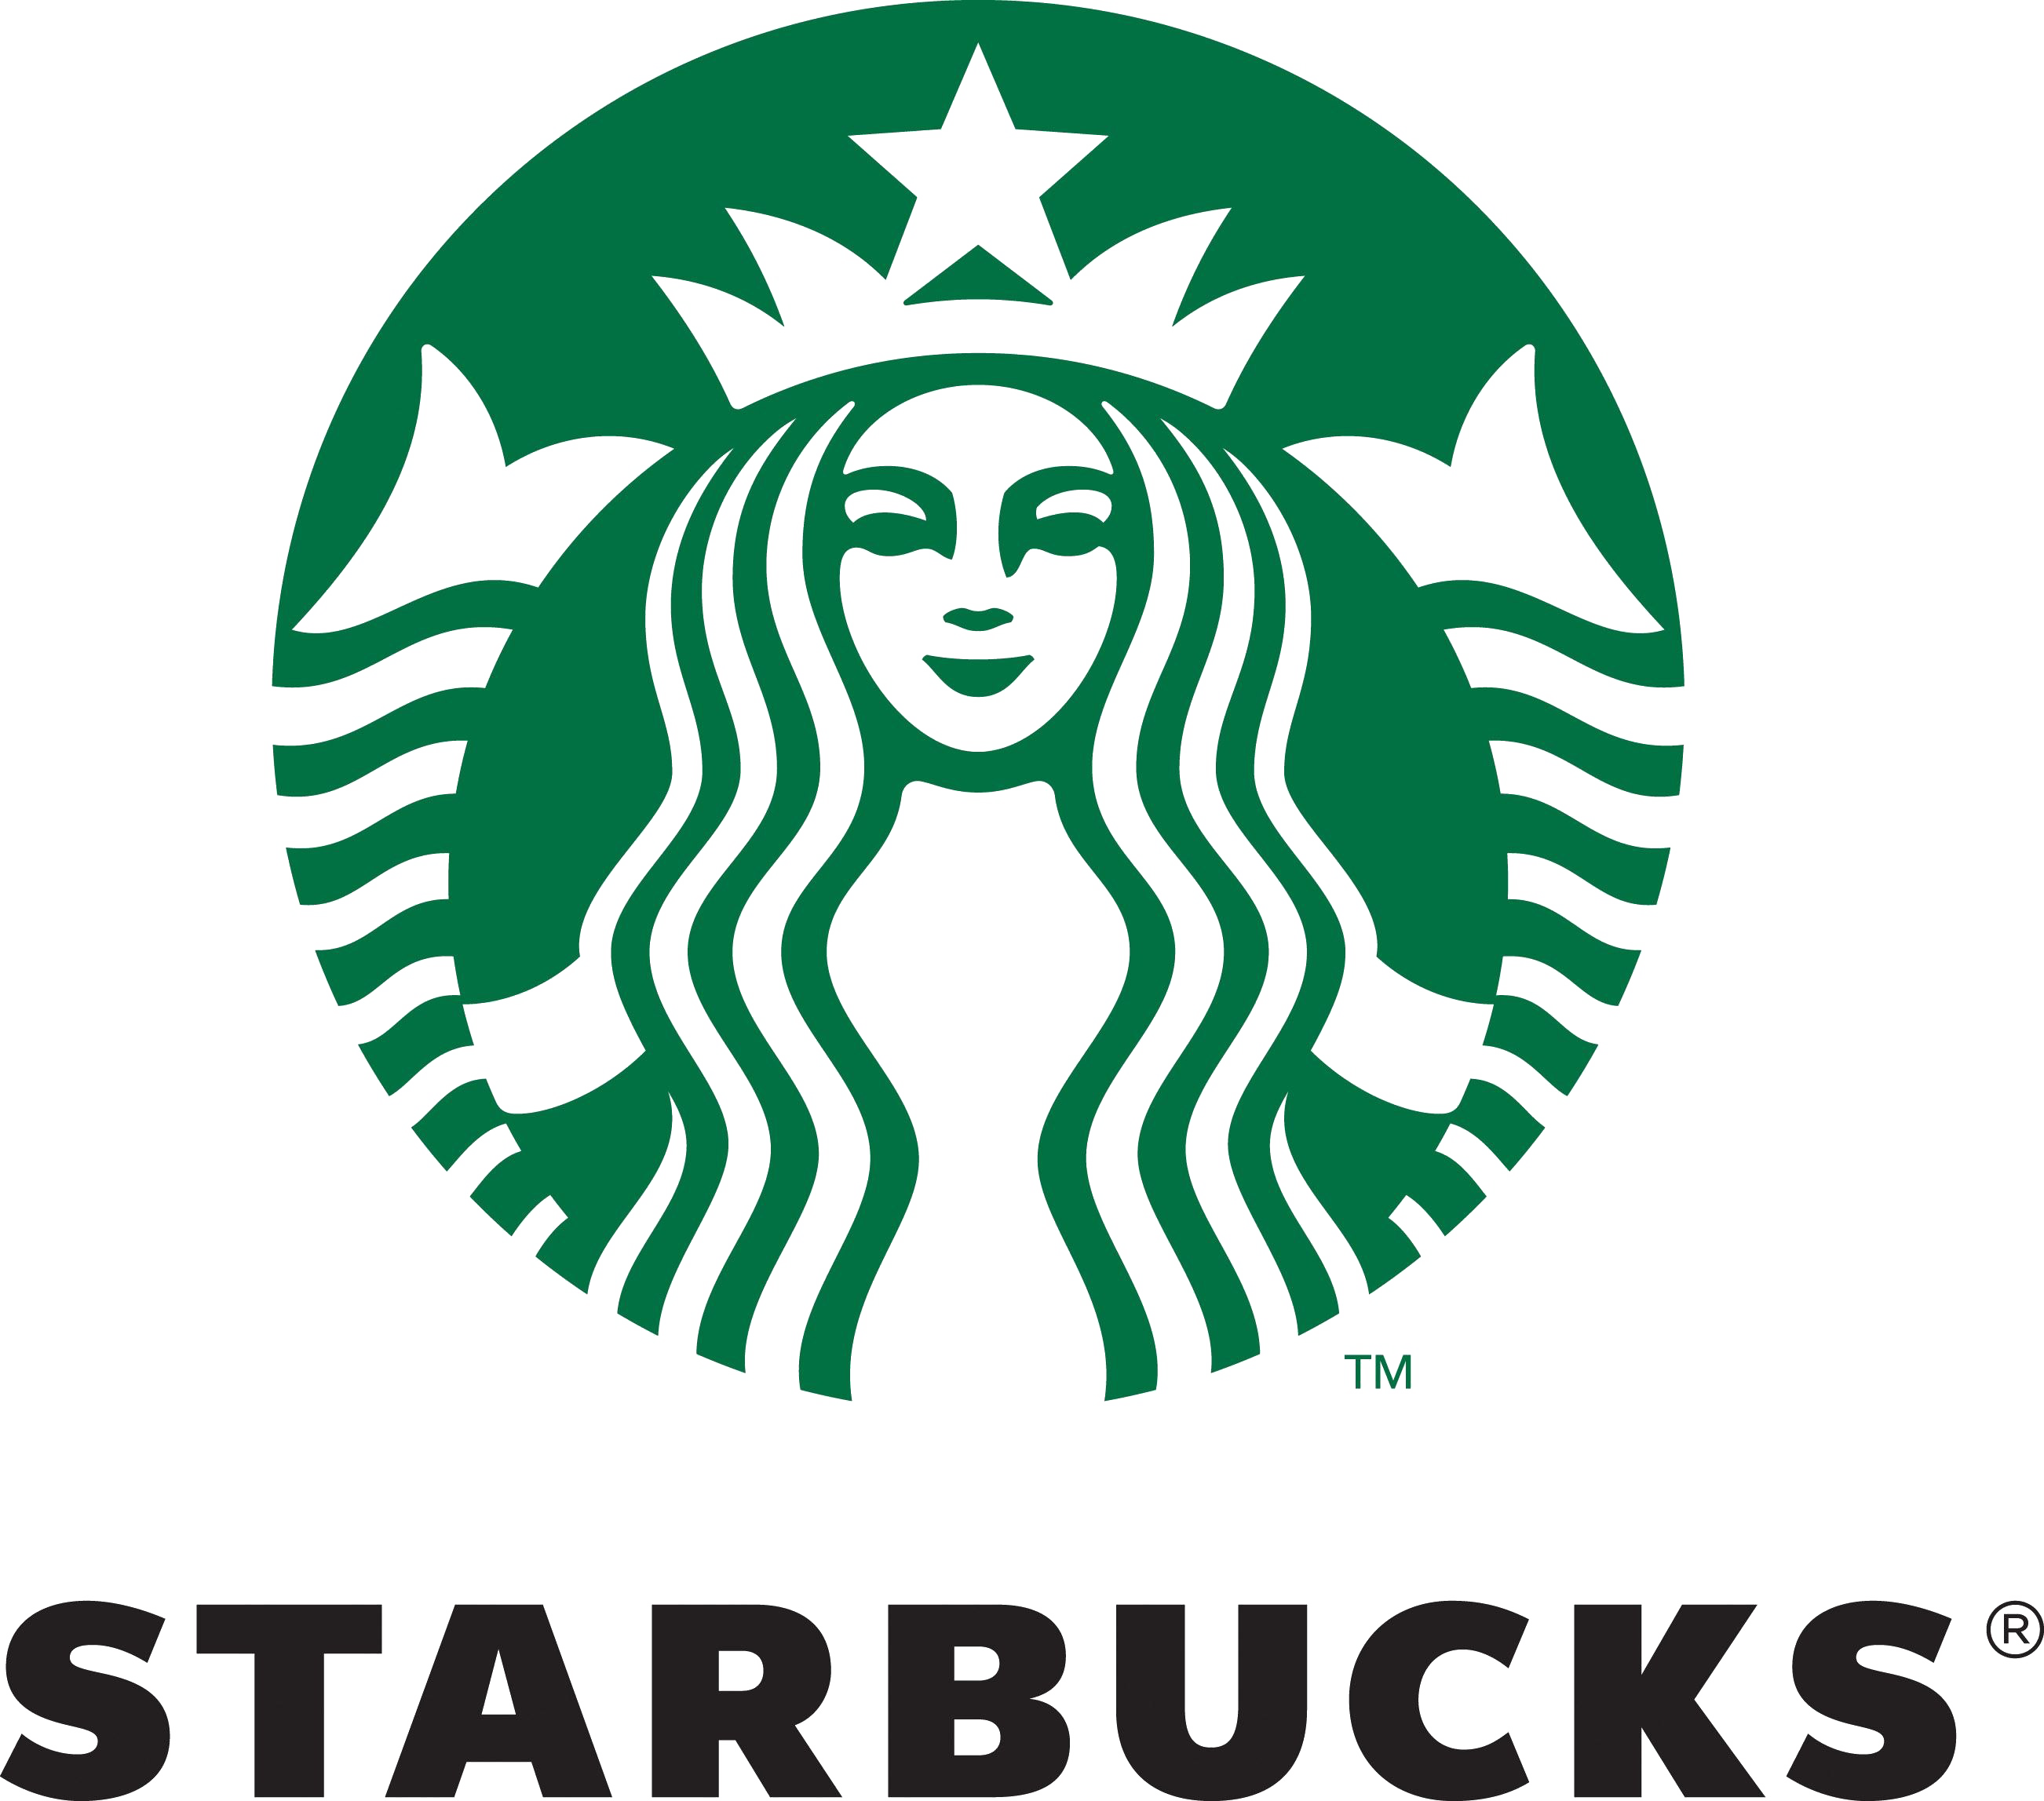 Opisyal na logo ng Starbucks